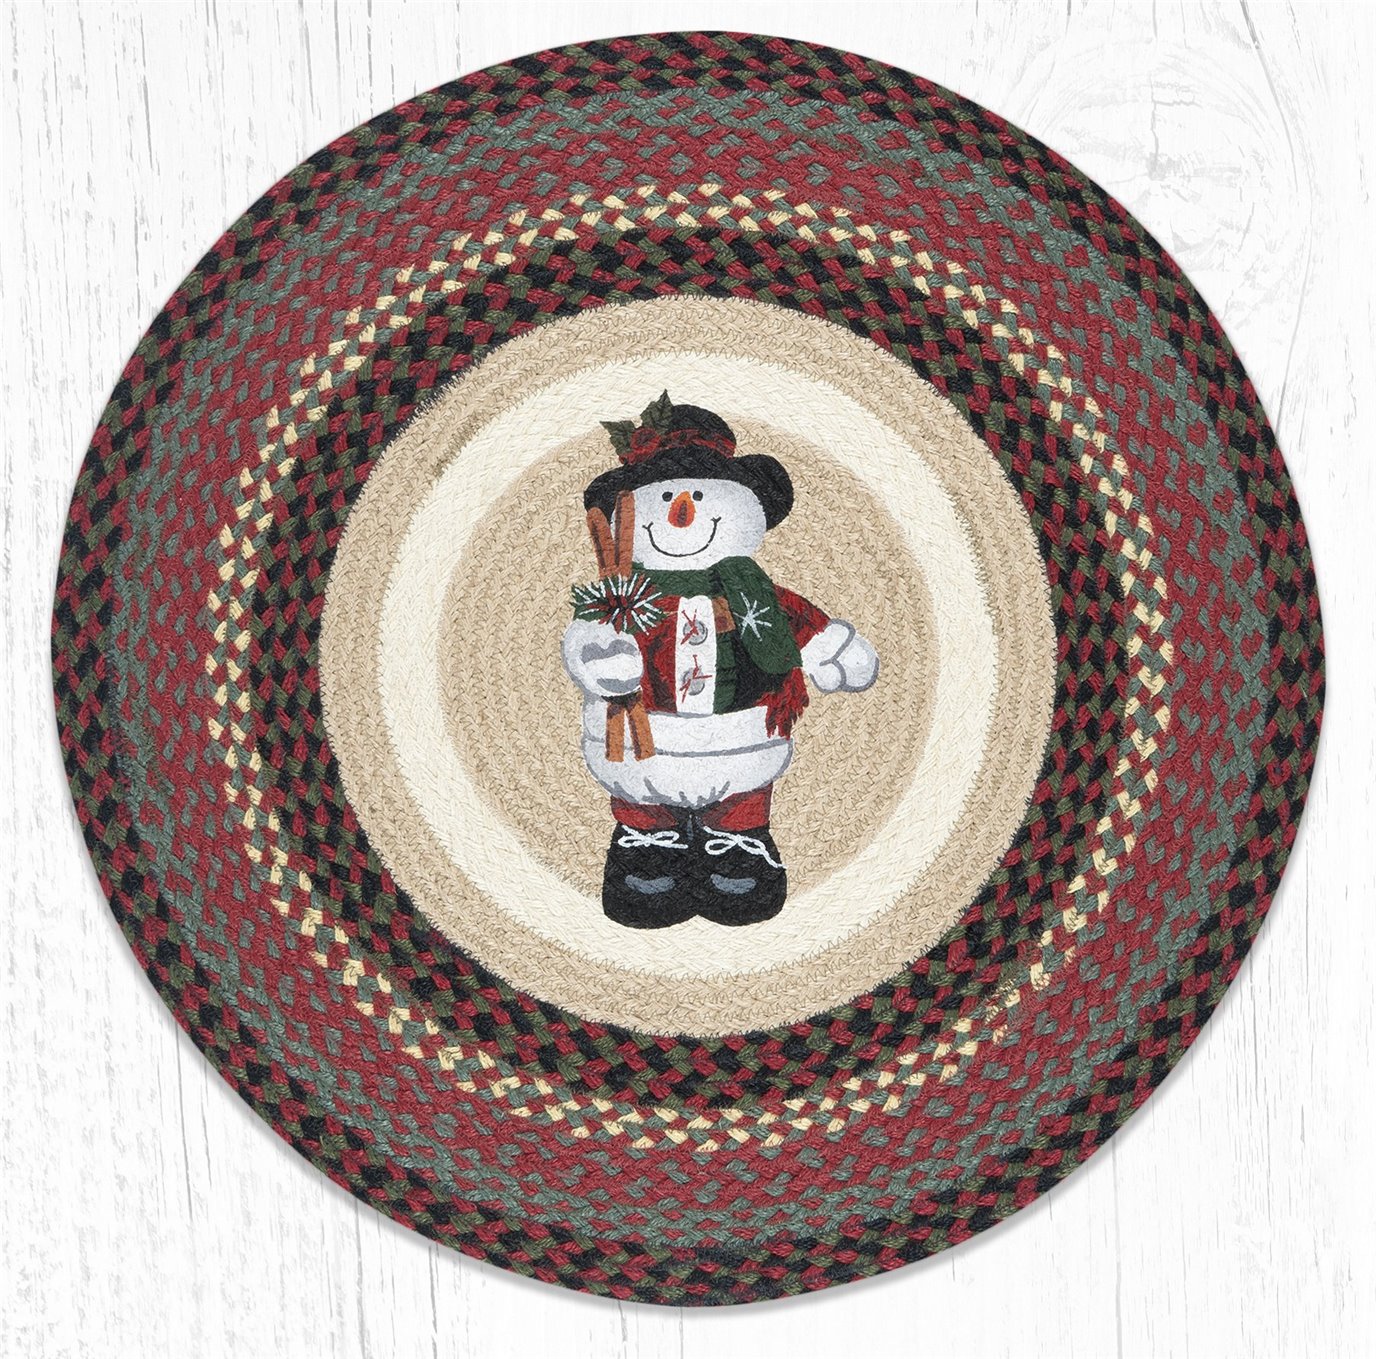 Snowman in Top Hat Round Braided Rug 27"x27"